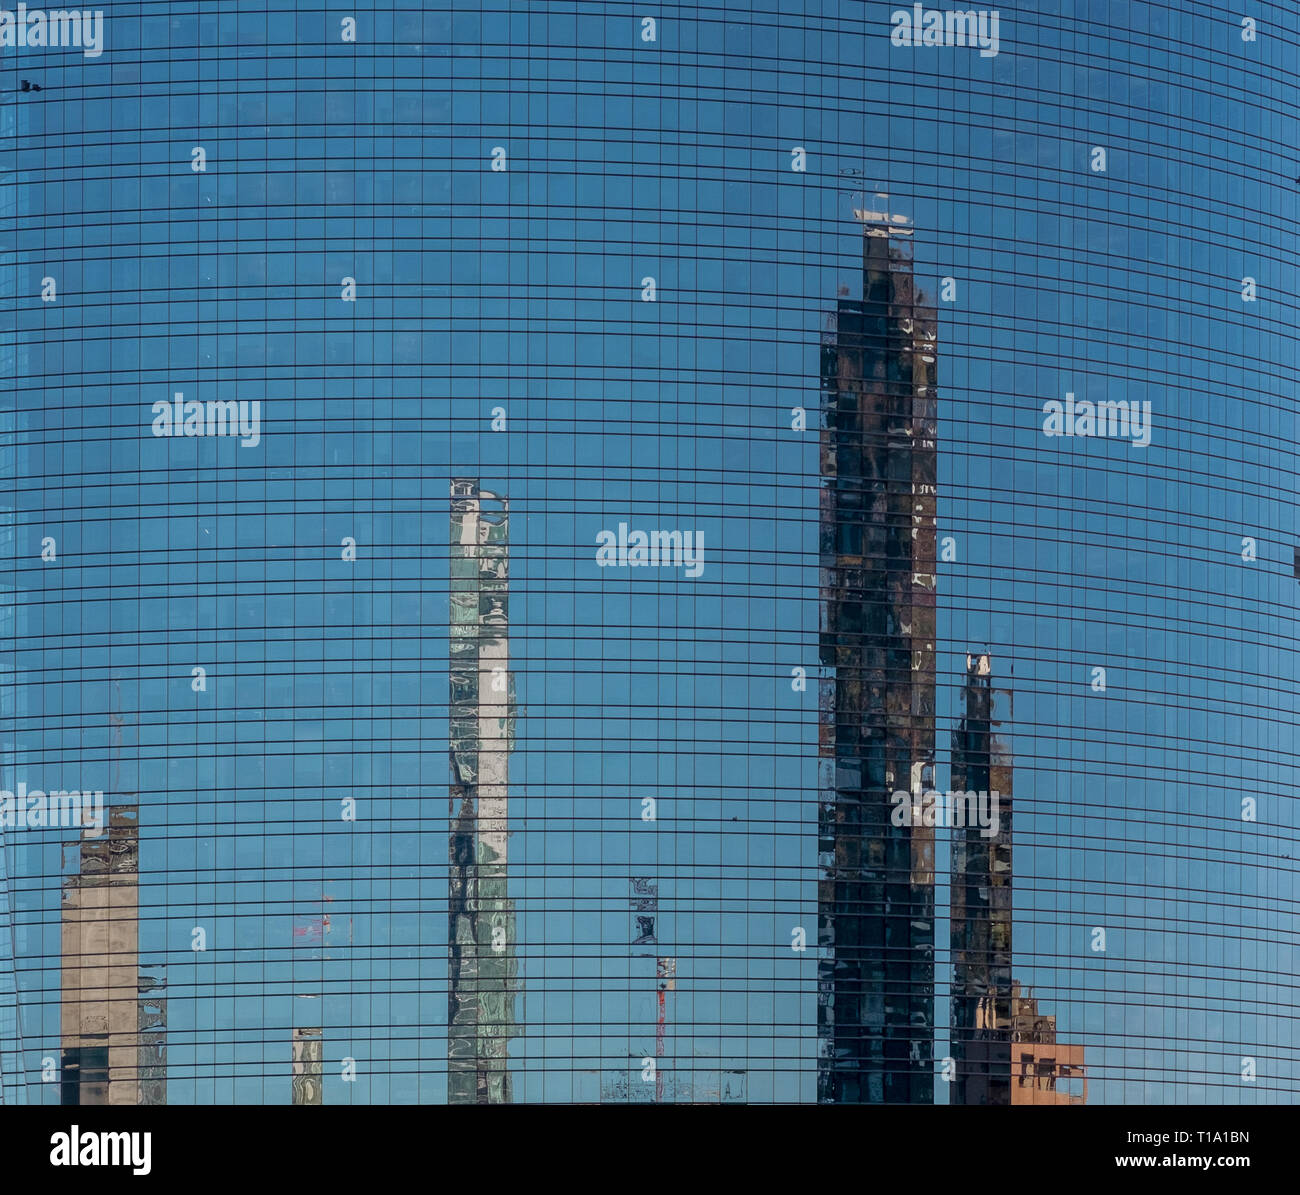 Moderni edifici che si riflettono sulla parete di vetro. Milano, lombardia, italia. Foto Stock